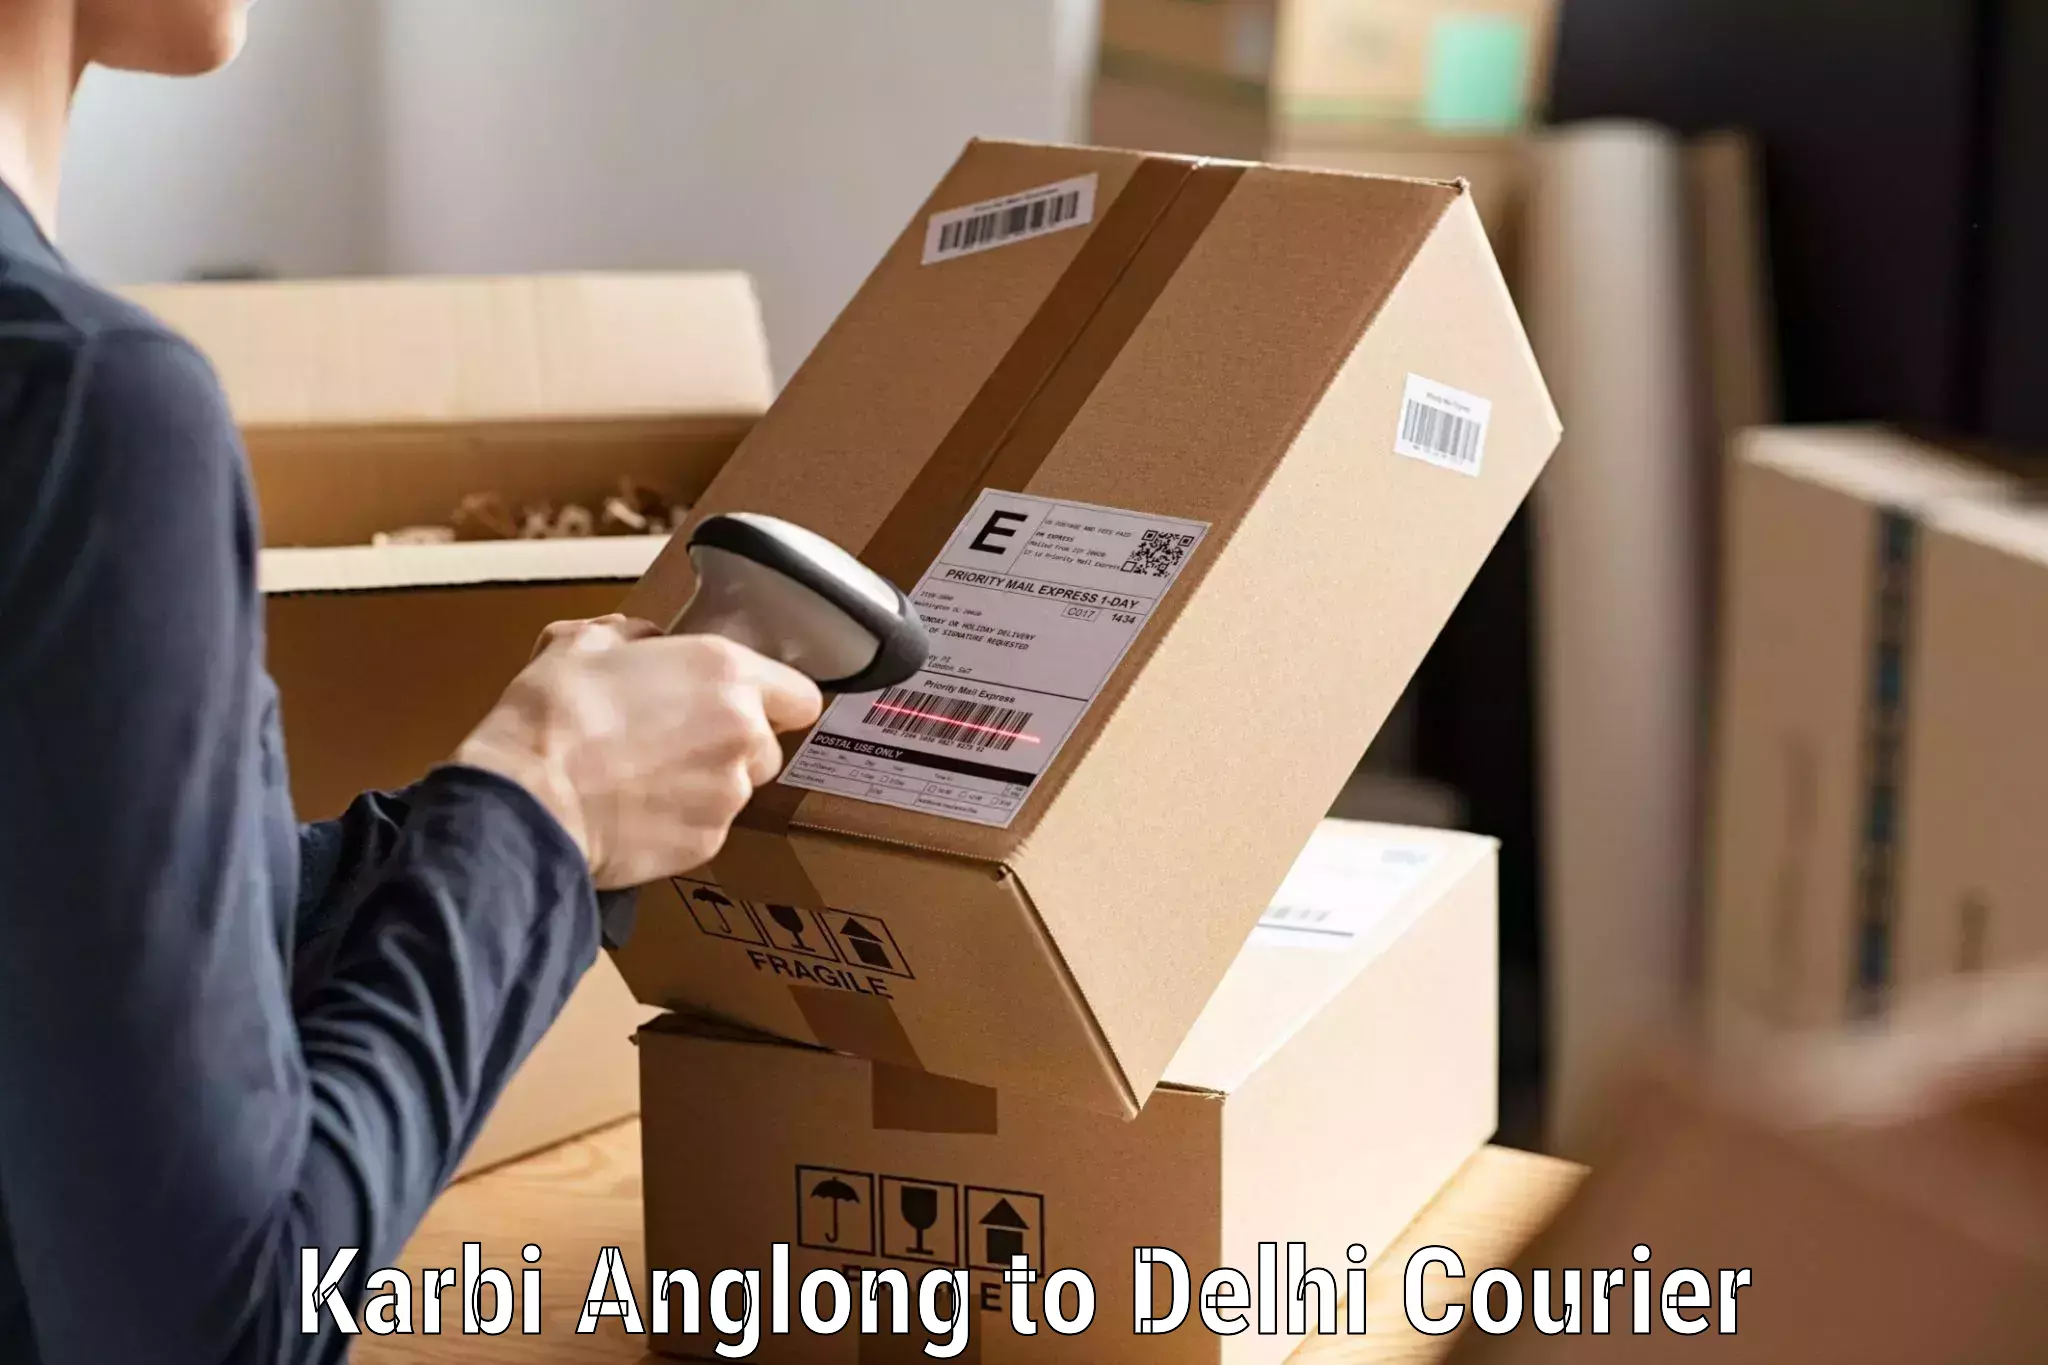 Express postal services Karbi Anglong to Jamia Millia Islamia New Delhi